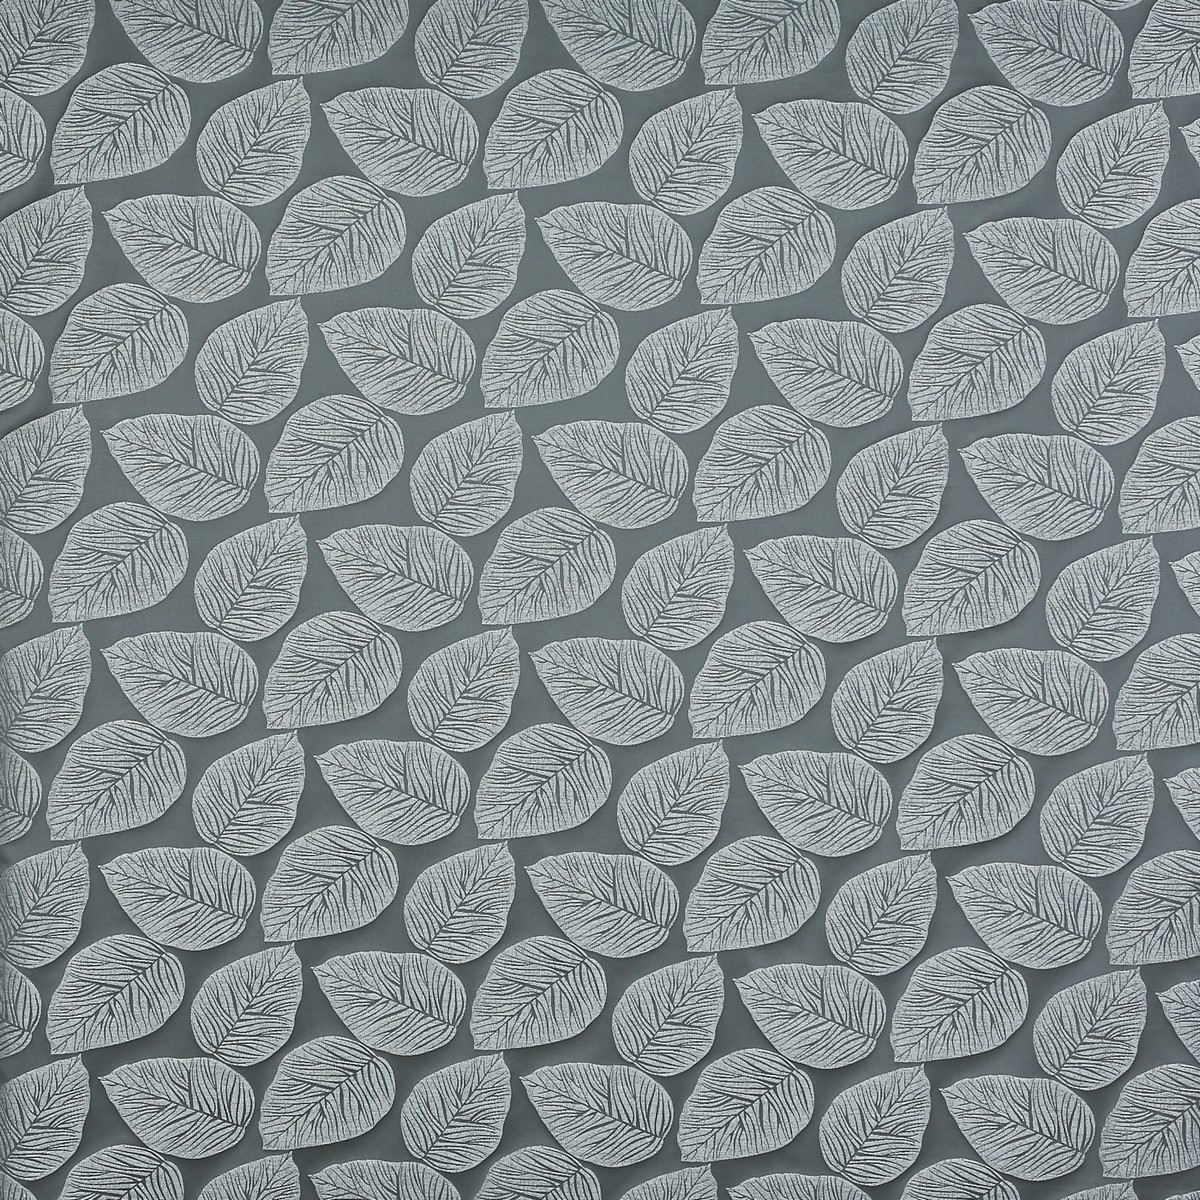 Hanna Carbon Fabric by Prestigious Textiles